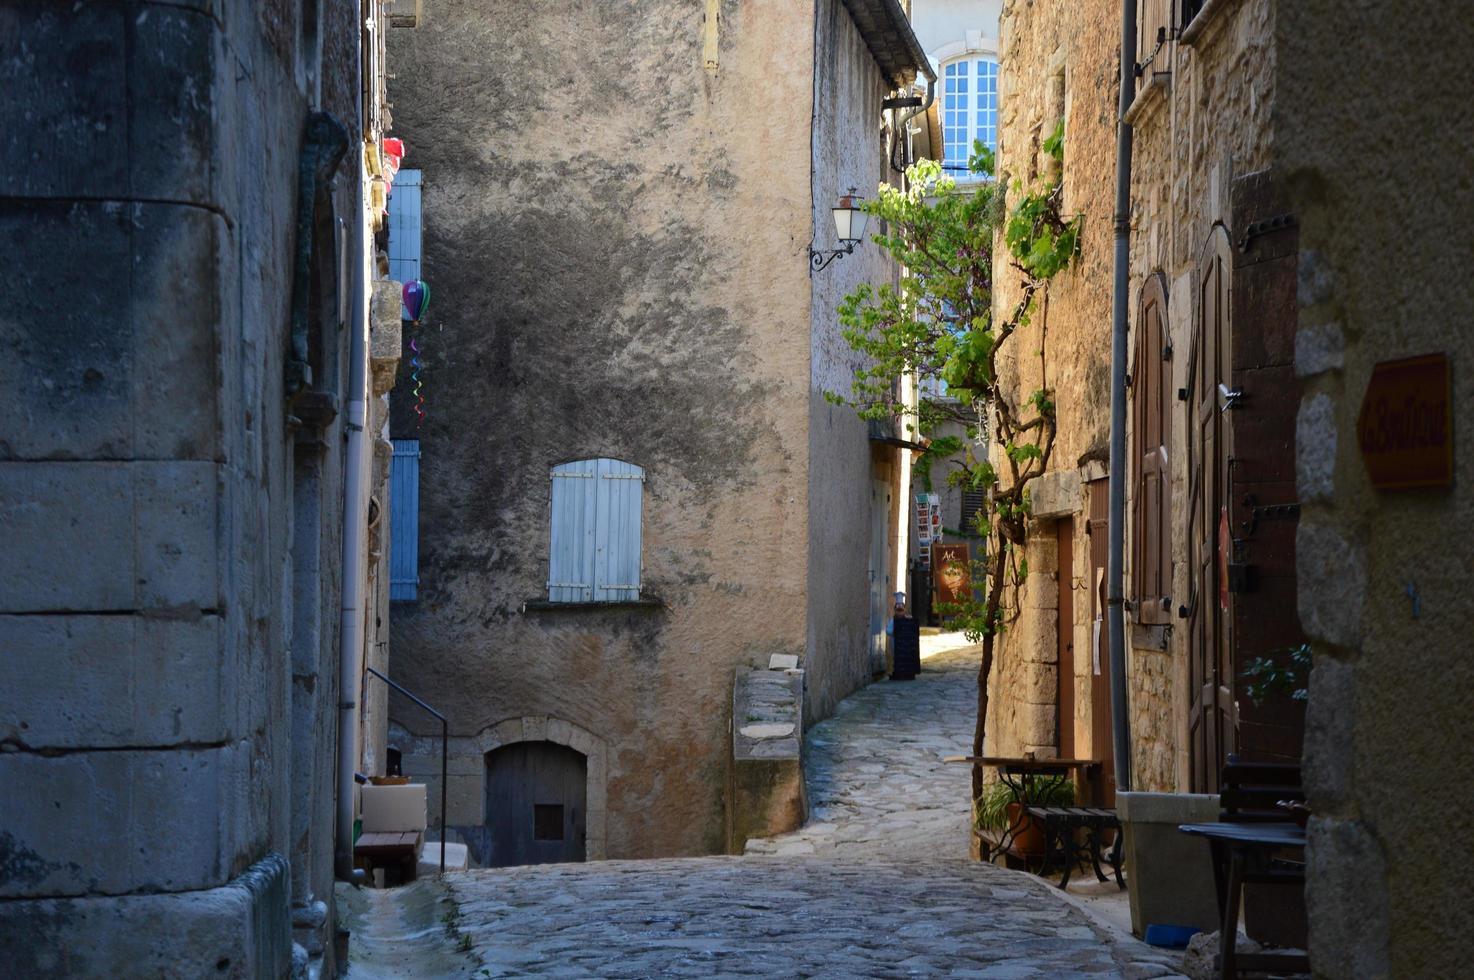 típica calle estrecha francesa foto